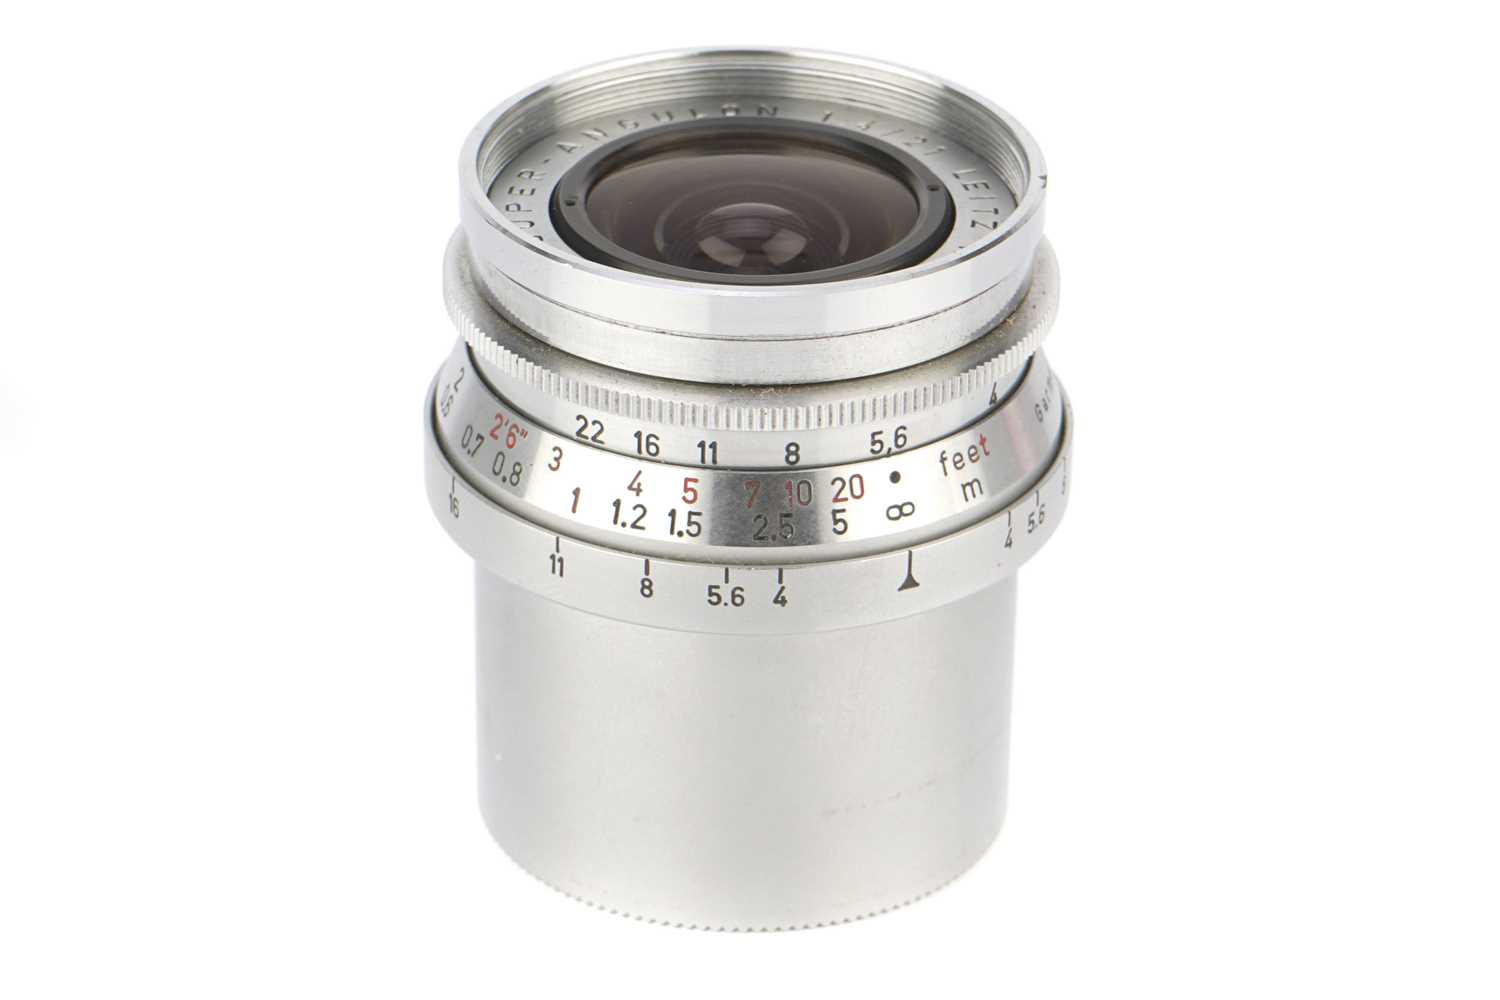 Lot 25 - A Leitz Super-Angulon f/4 21mm Lens